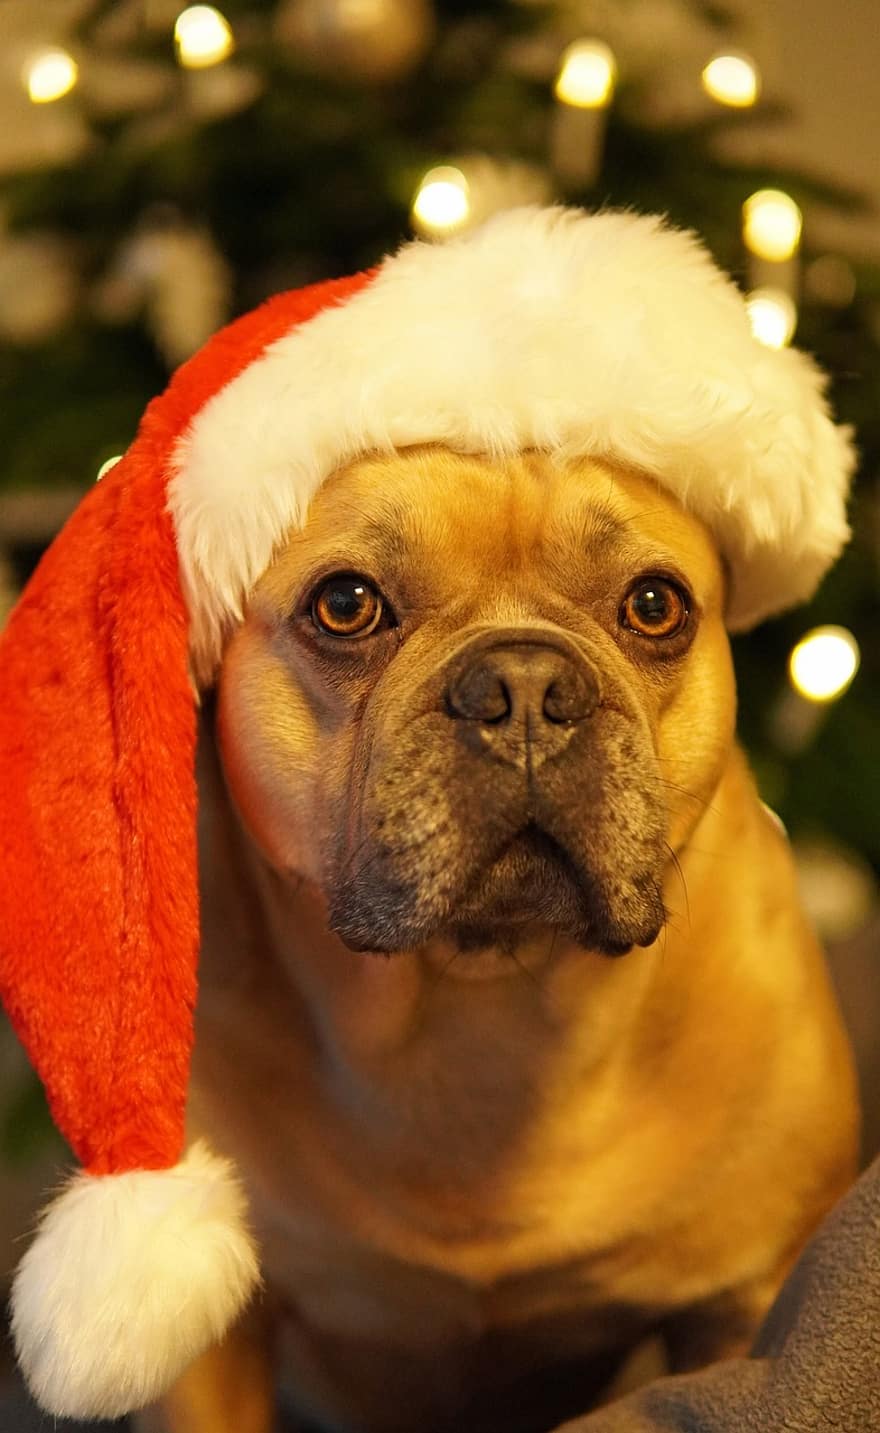 anjing, bulldog Perancis, hari Natal, Selamat berlibur, lelah, mata tertutup, topi santa, pohon Natal, pohon cemara, kartu ucapan, imut